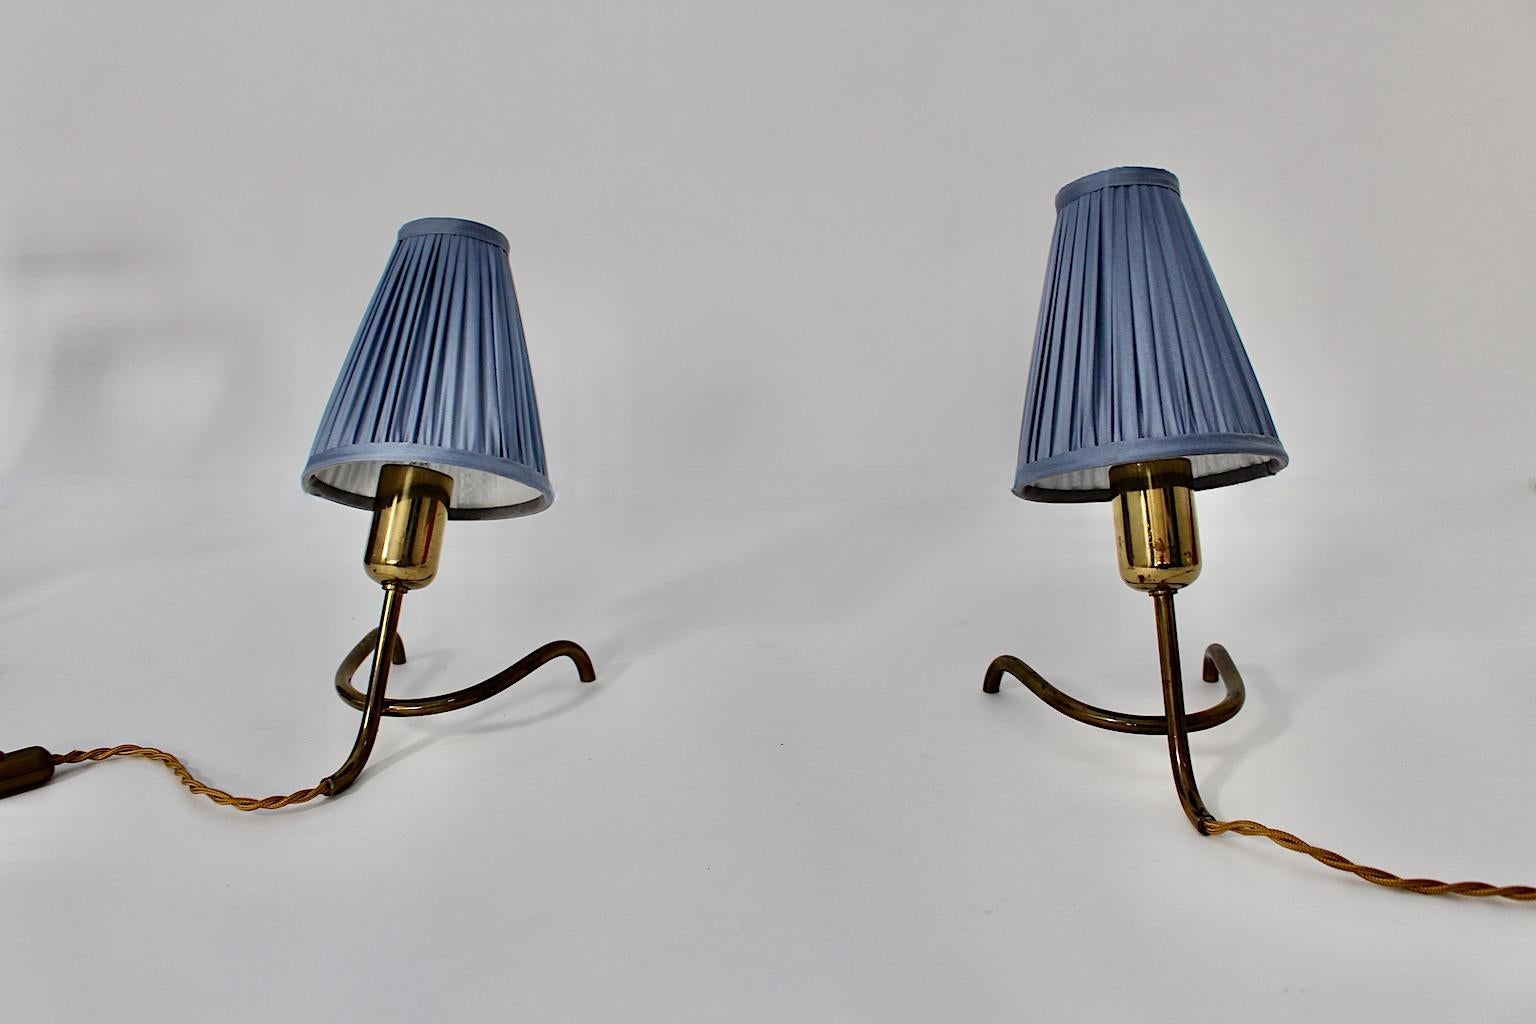 Paire de lampes de table en laiton Vintage Mid Century Modern Duo avec nouveaux abat-jour bleu pastel en soie plissée, 1950s Autriche.
Superbe paire de lampes de table en laiton, avec base en forme de pied de biche, et lampe de table en métal.